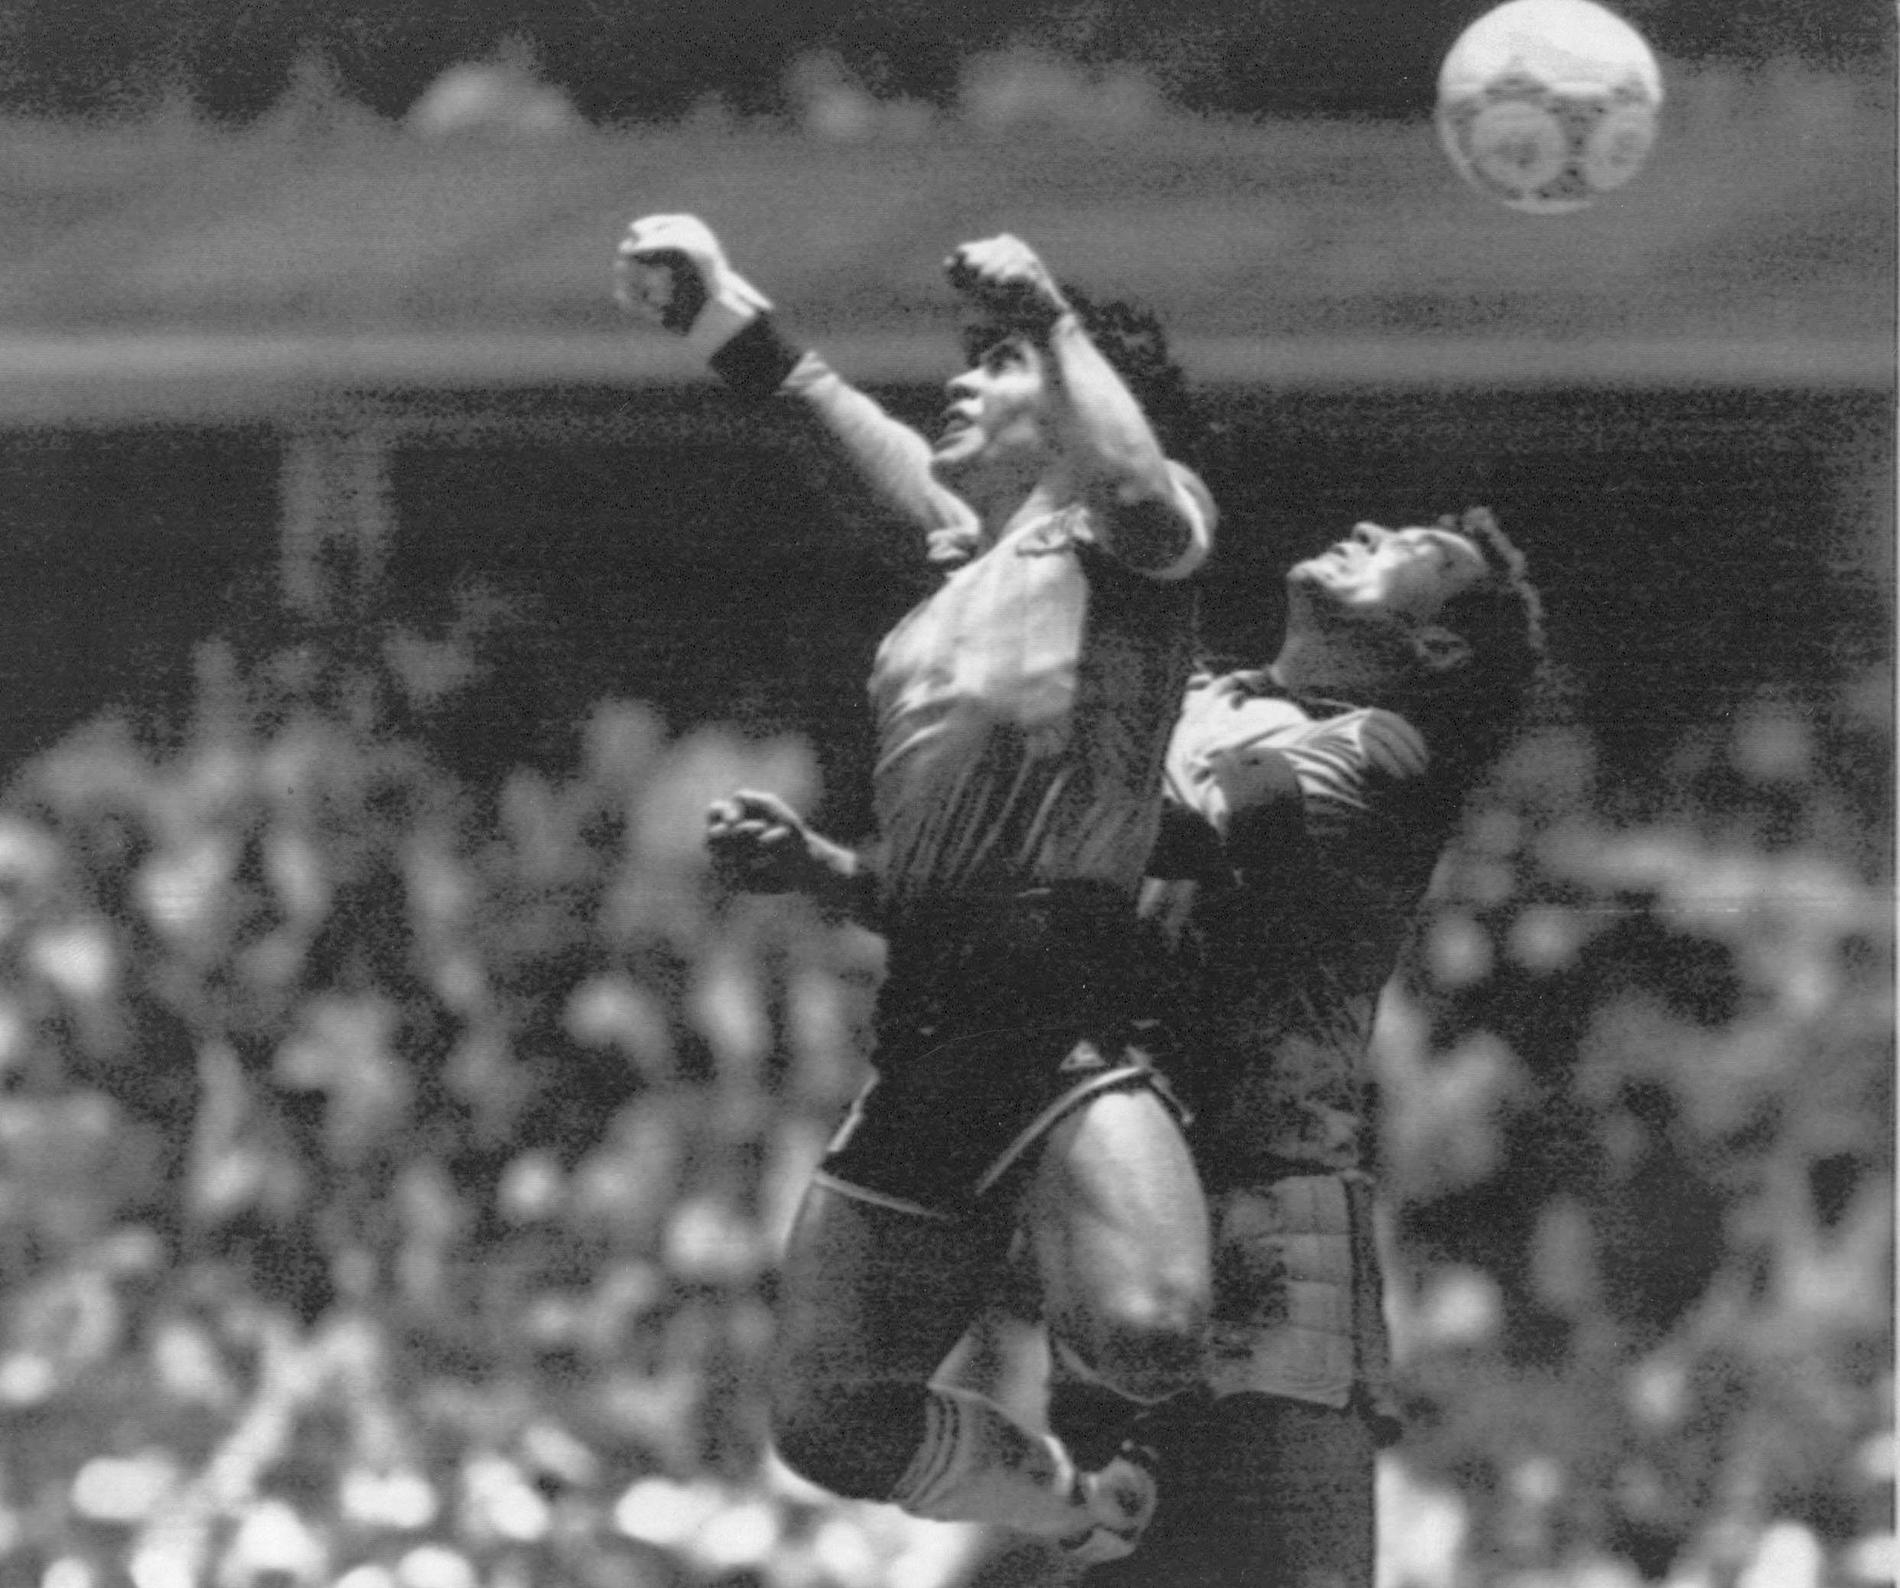 Världens kändaste fotbollshändelse? Maradona slår in bollen med handen i kvartsfinalen mot England i VM 1986